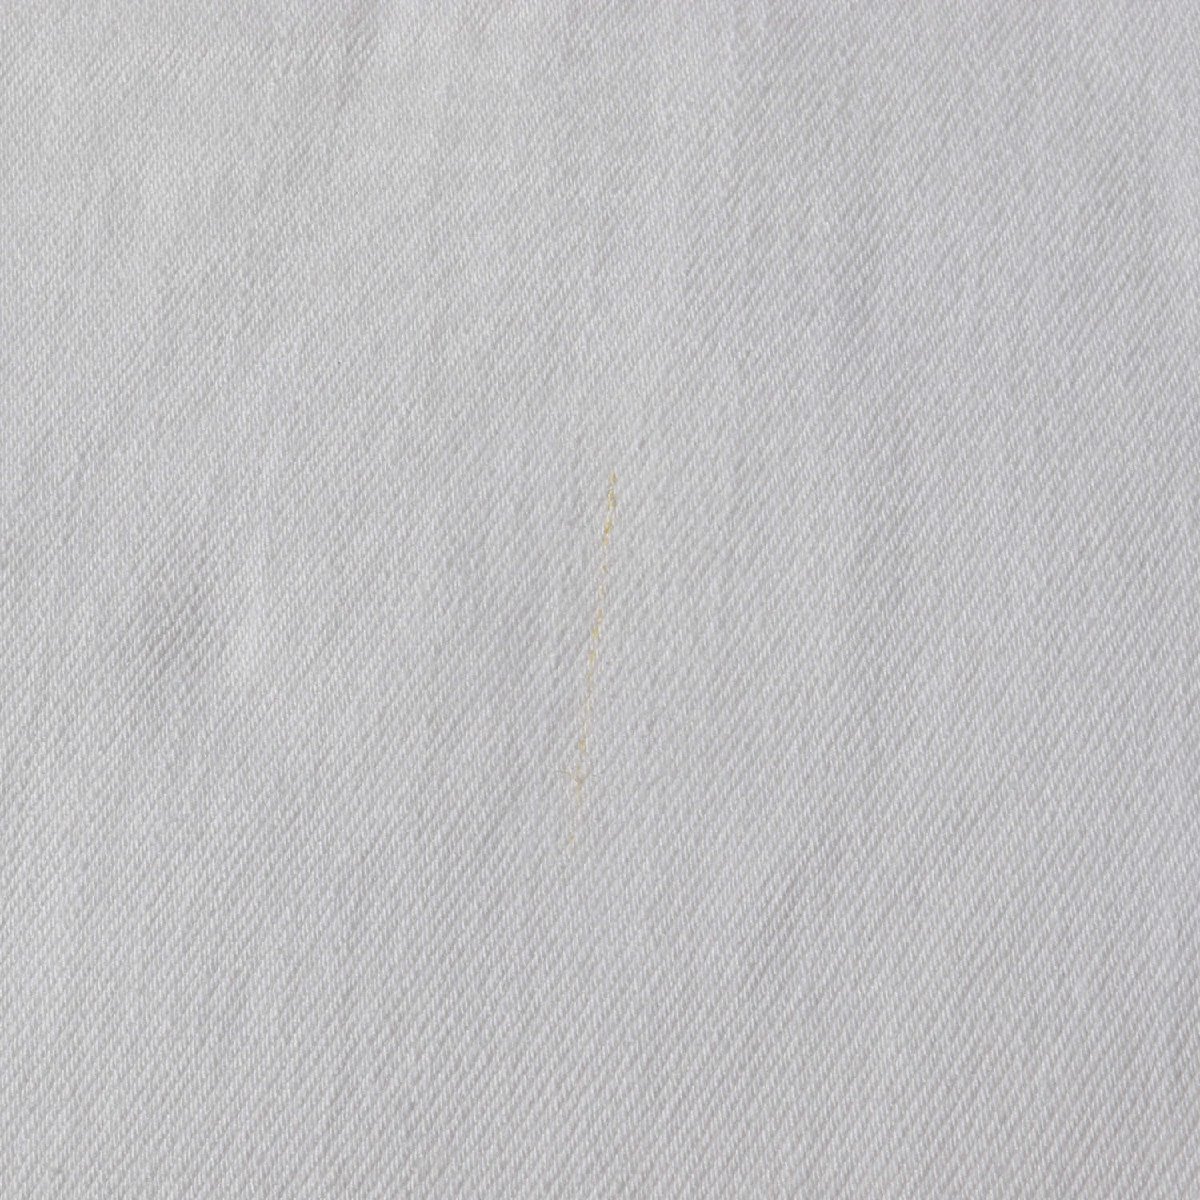 Paul Smith ポールスミス パンツ サイズ:L テーパード ストレッチ カラー デニムパンツ ホワイト 白 ボトムス ジーンズ ジーパン_画像5